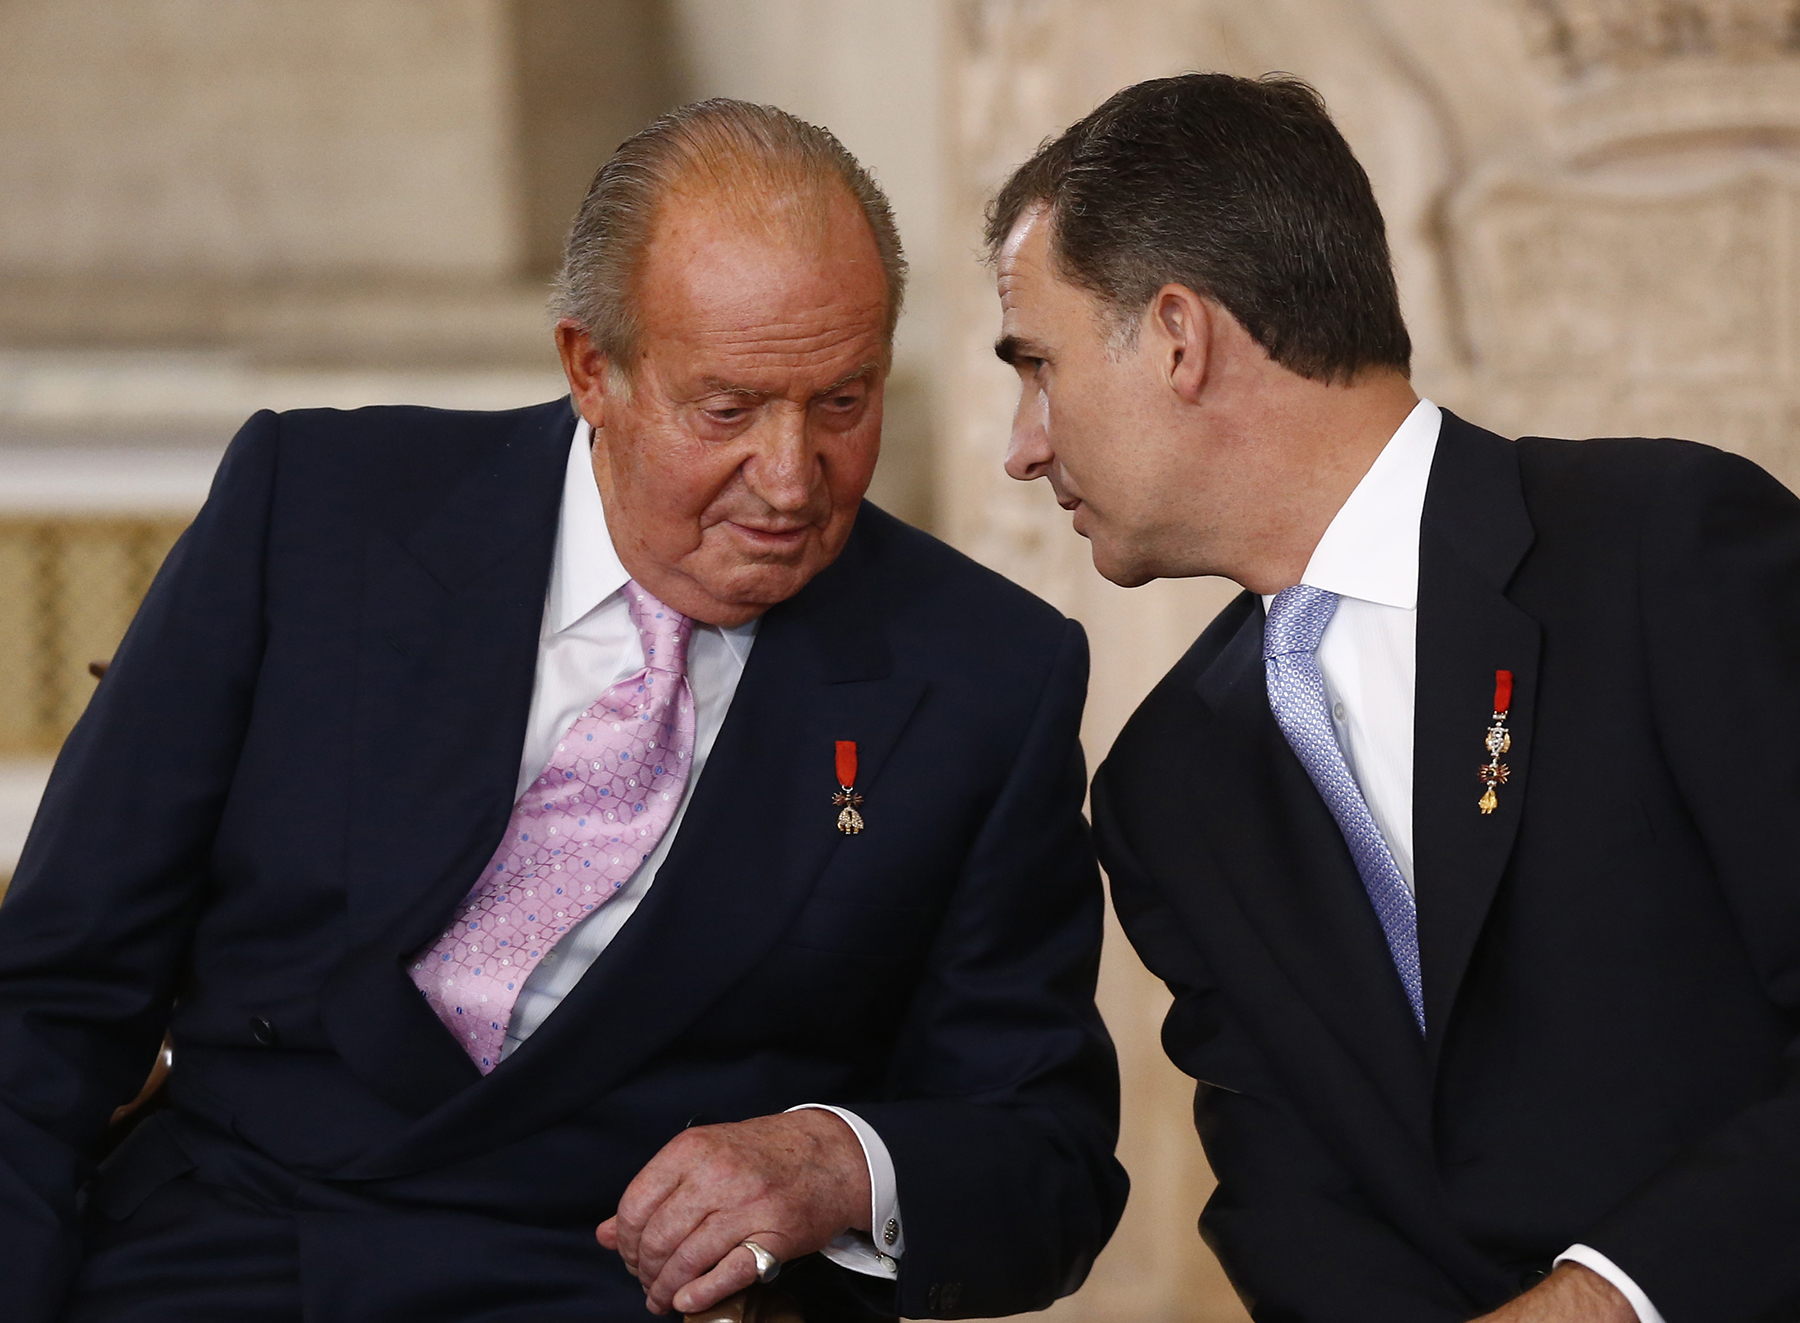 Los Reyes don Juan Carlos y Felipe VI juntos. / Gtres